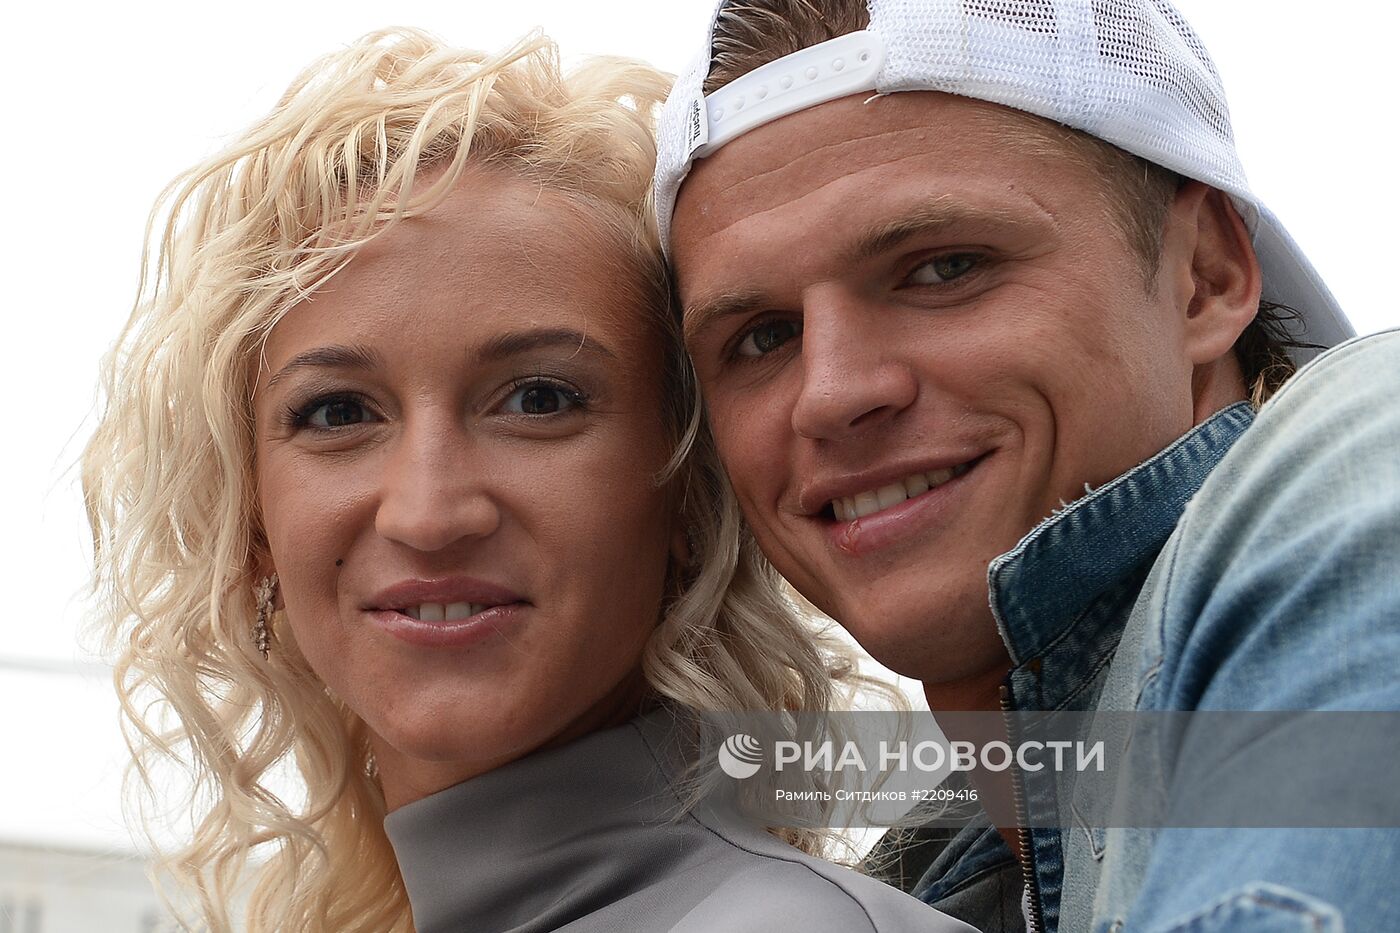 Футболист Дмитрий Тарасов с супругой Ольгой Бузовой